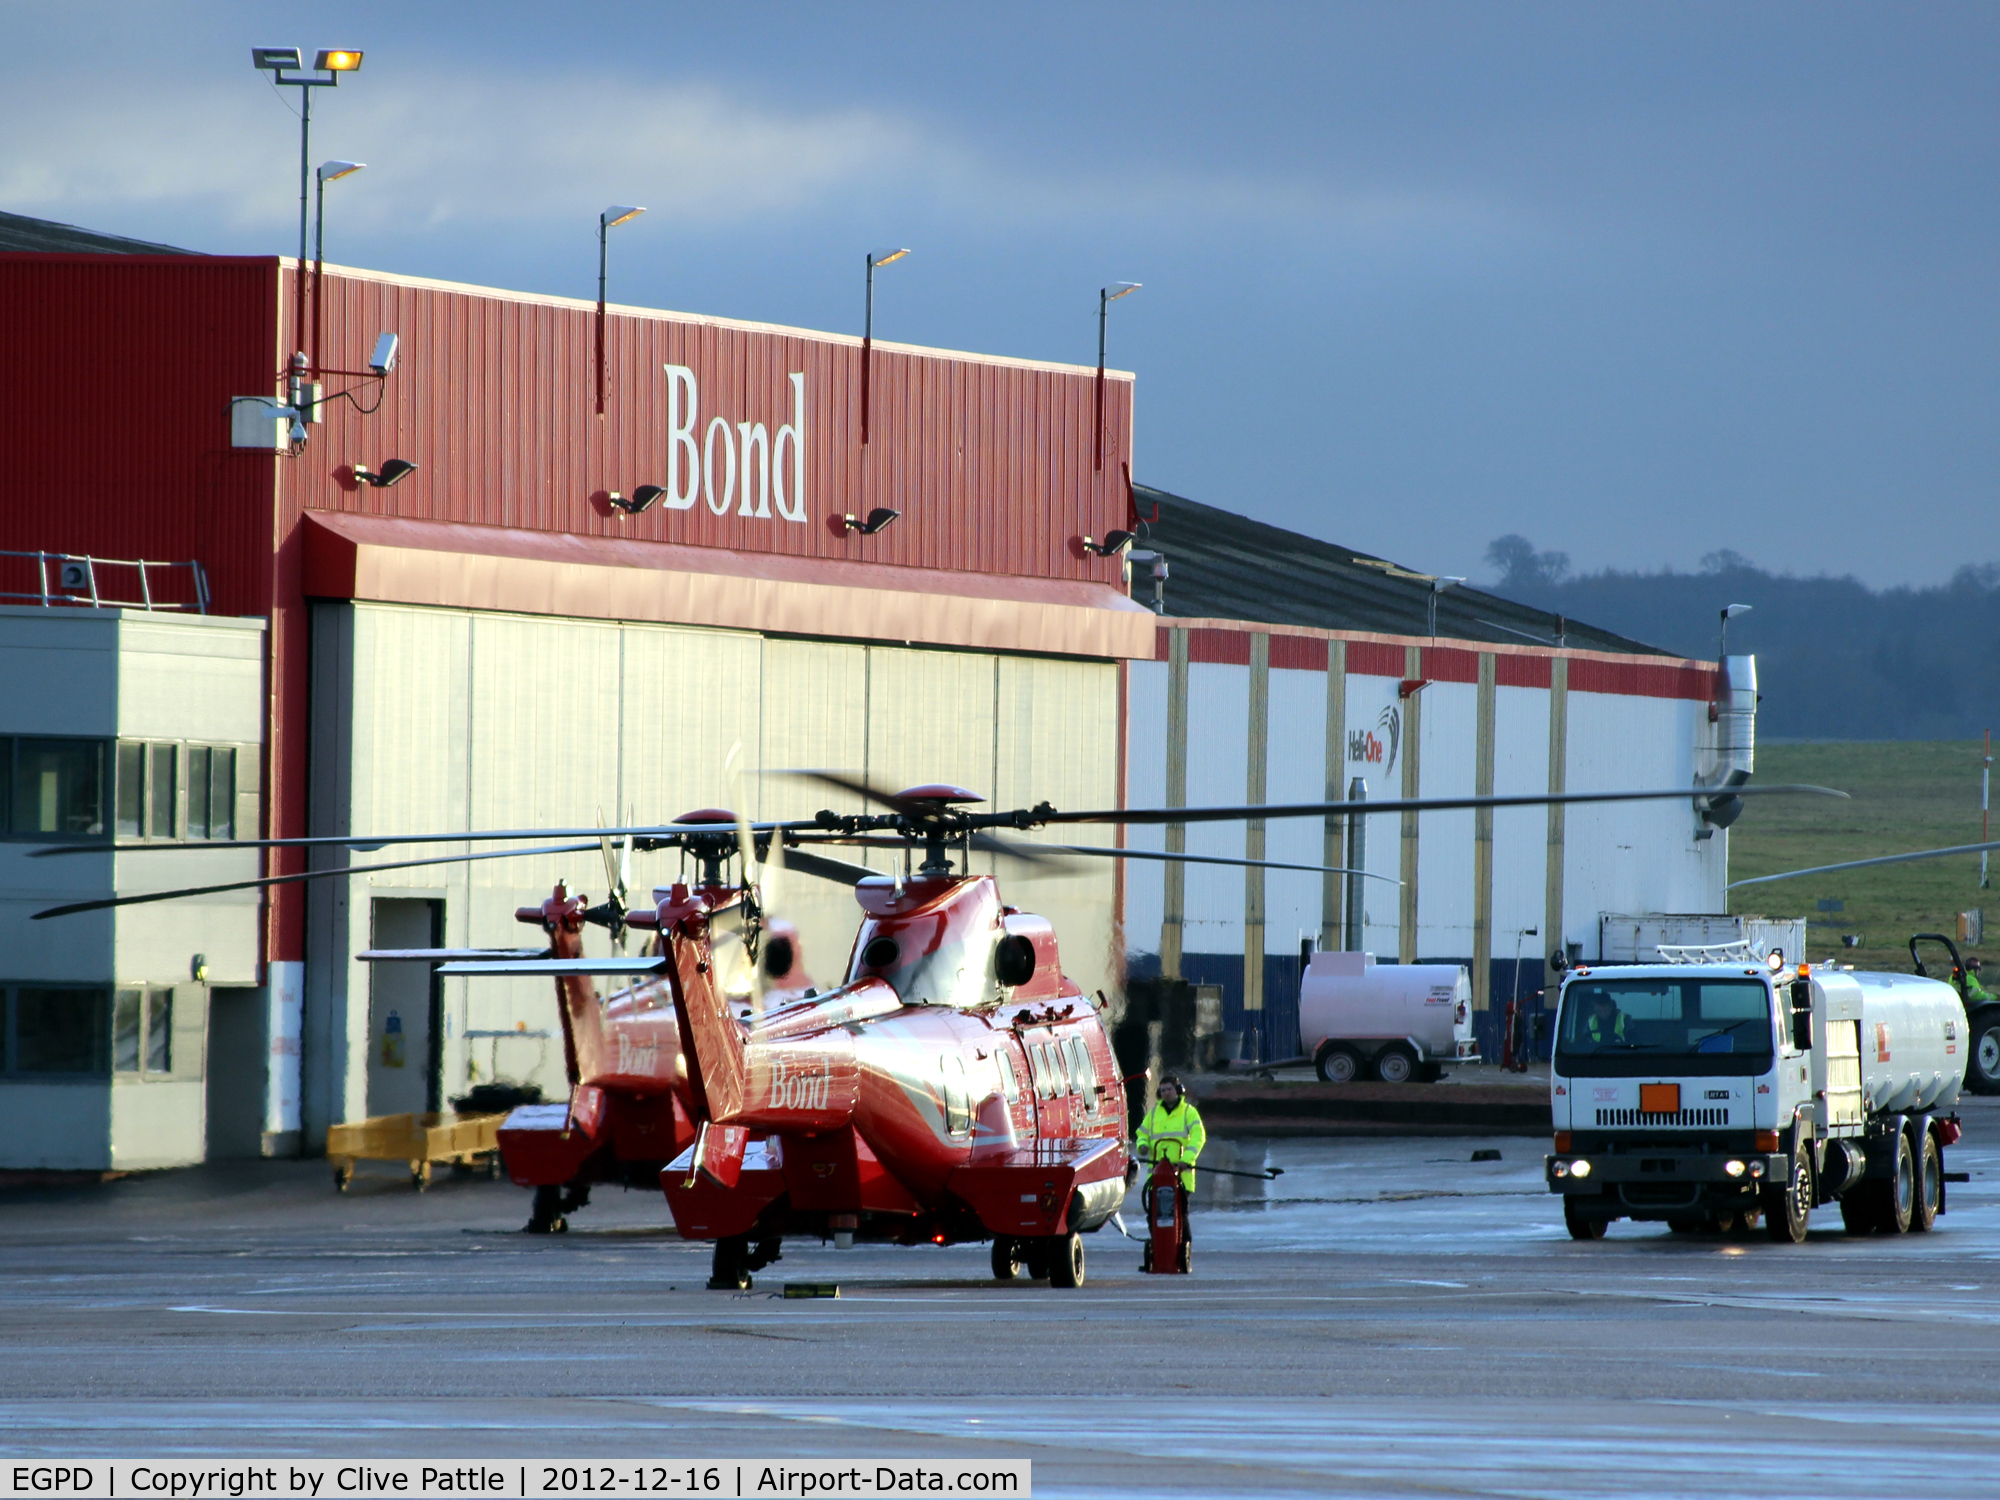 Aberdeen Airport, Aberdeen, Scotland United Kingdom (EGPD) - Bond Helicopter hangar at Aberdeen EGPD